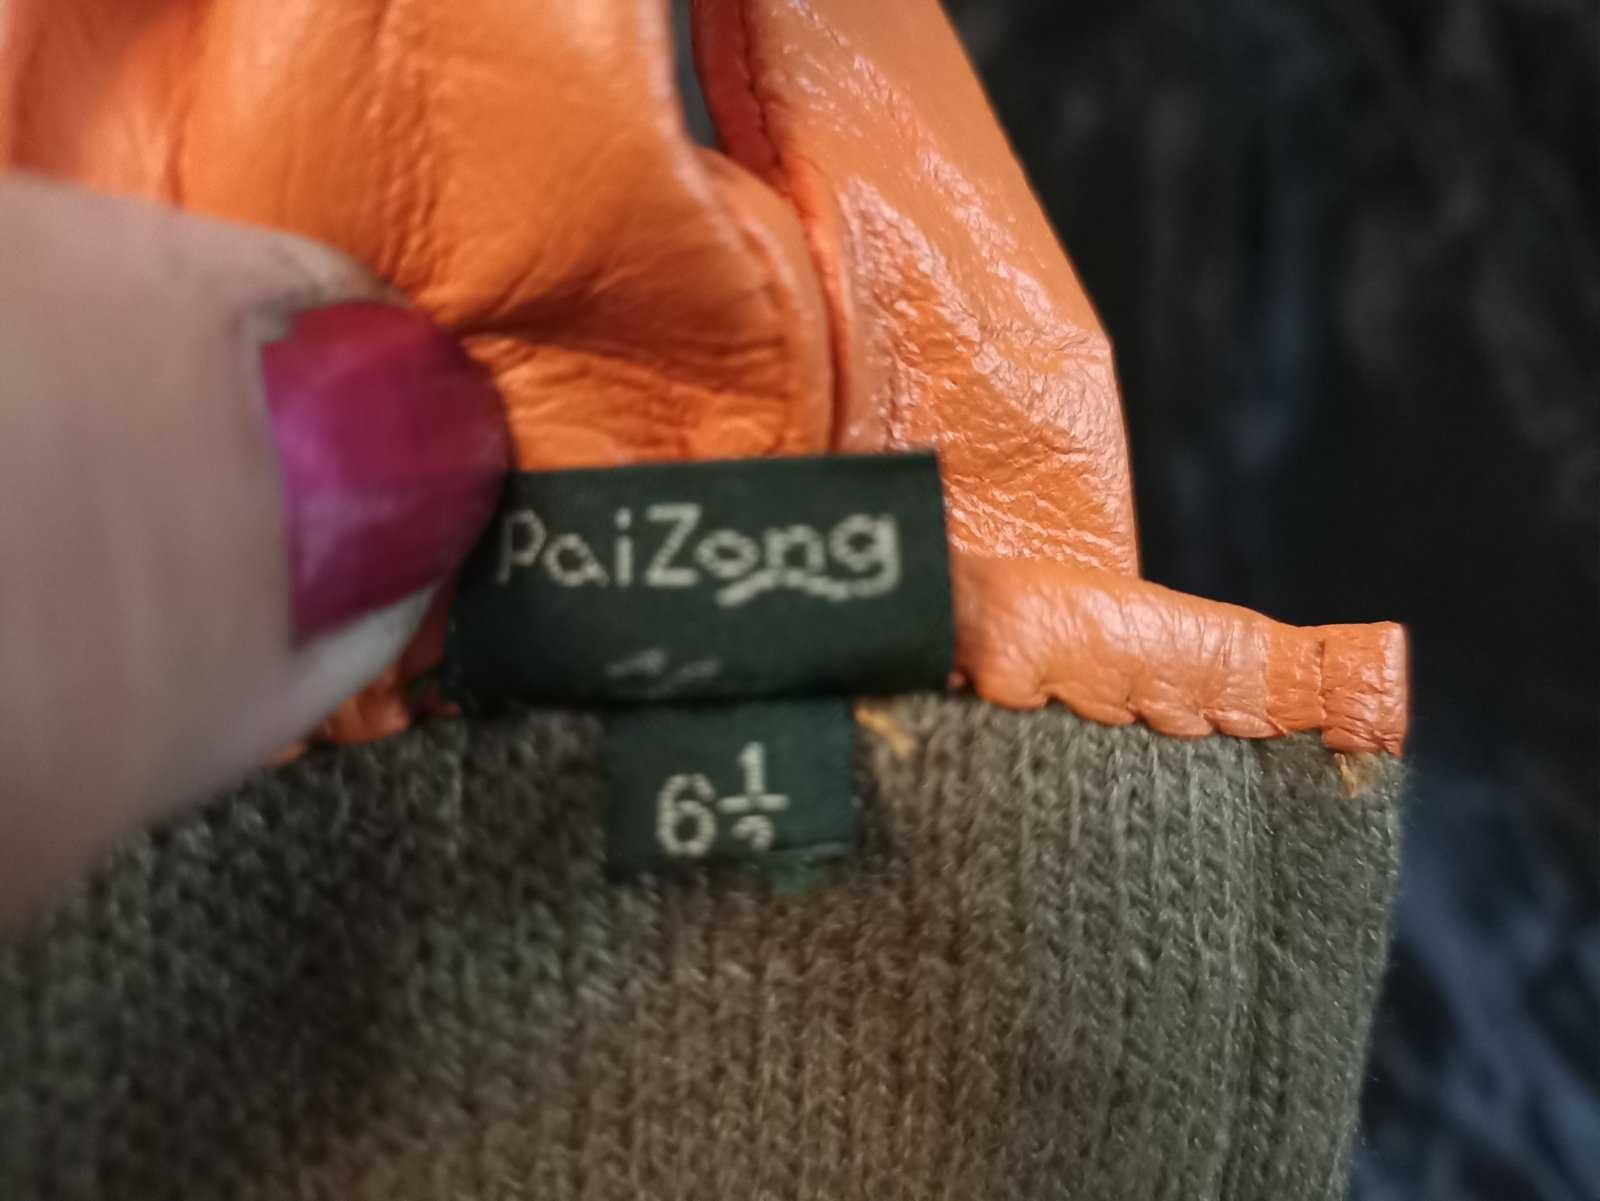 Кожа женские перчатки апельсинового цвета 6,5 размер